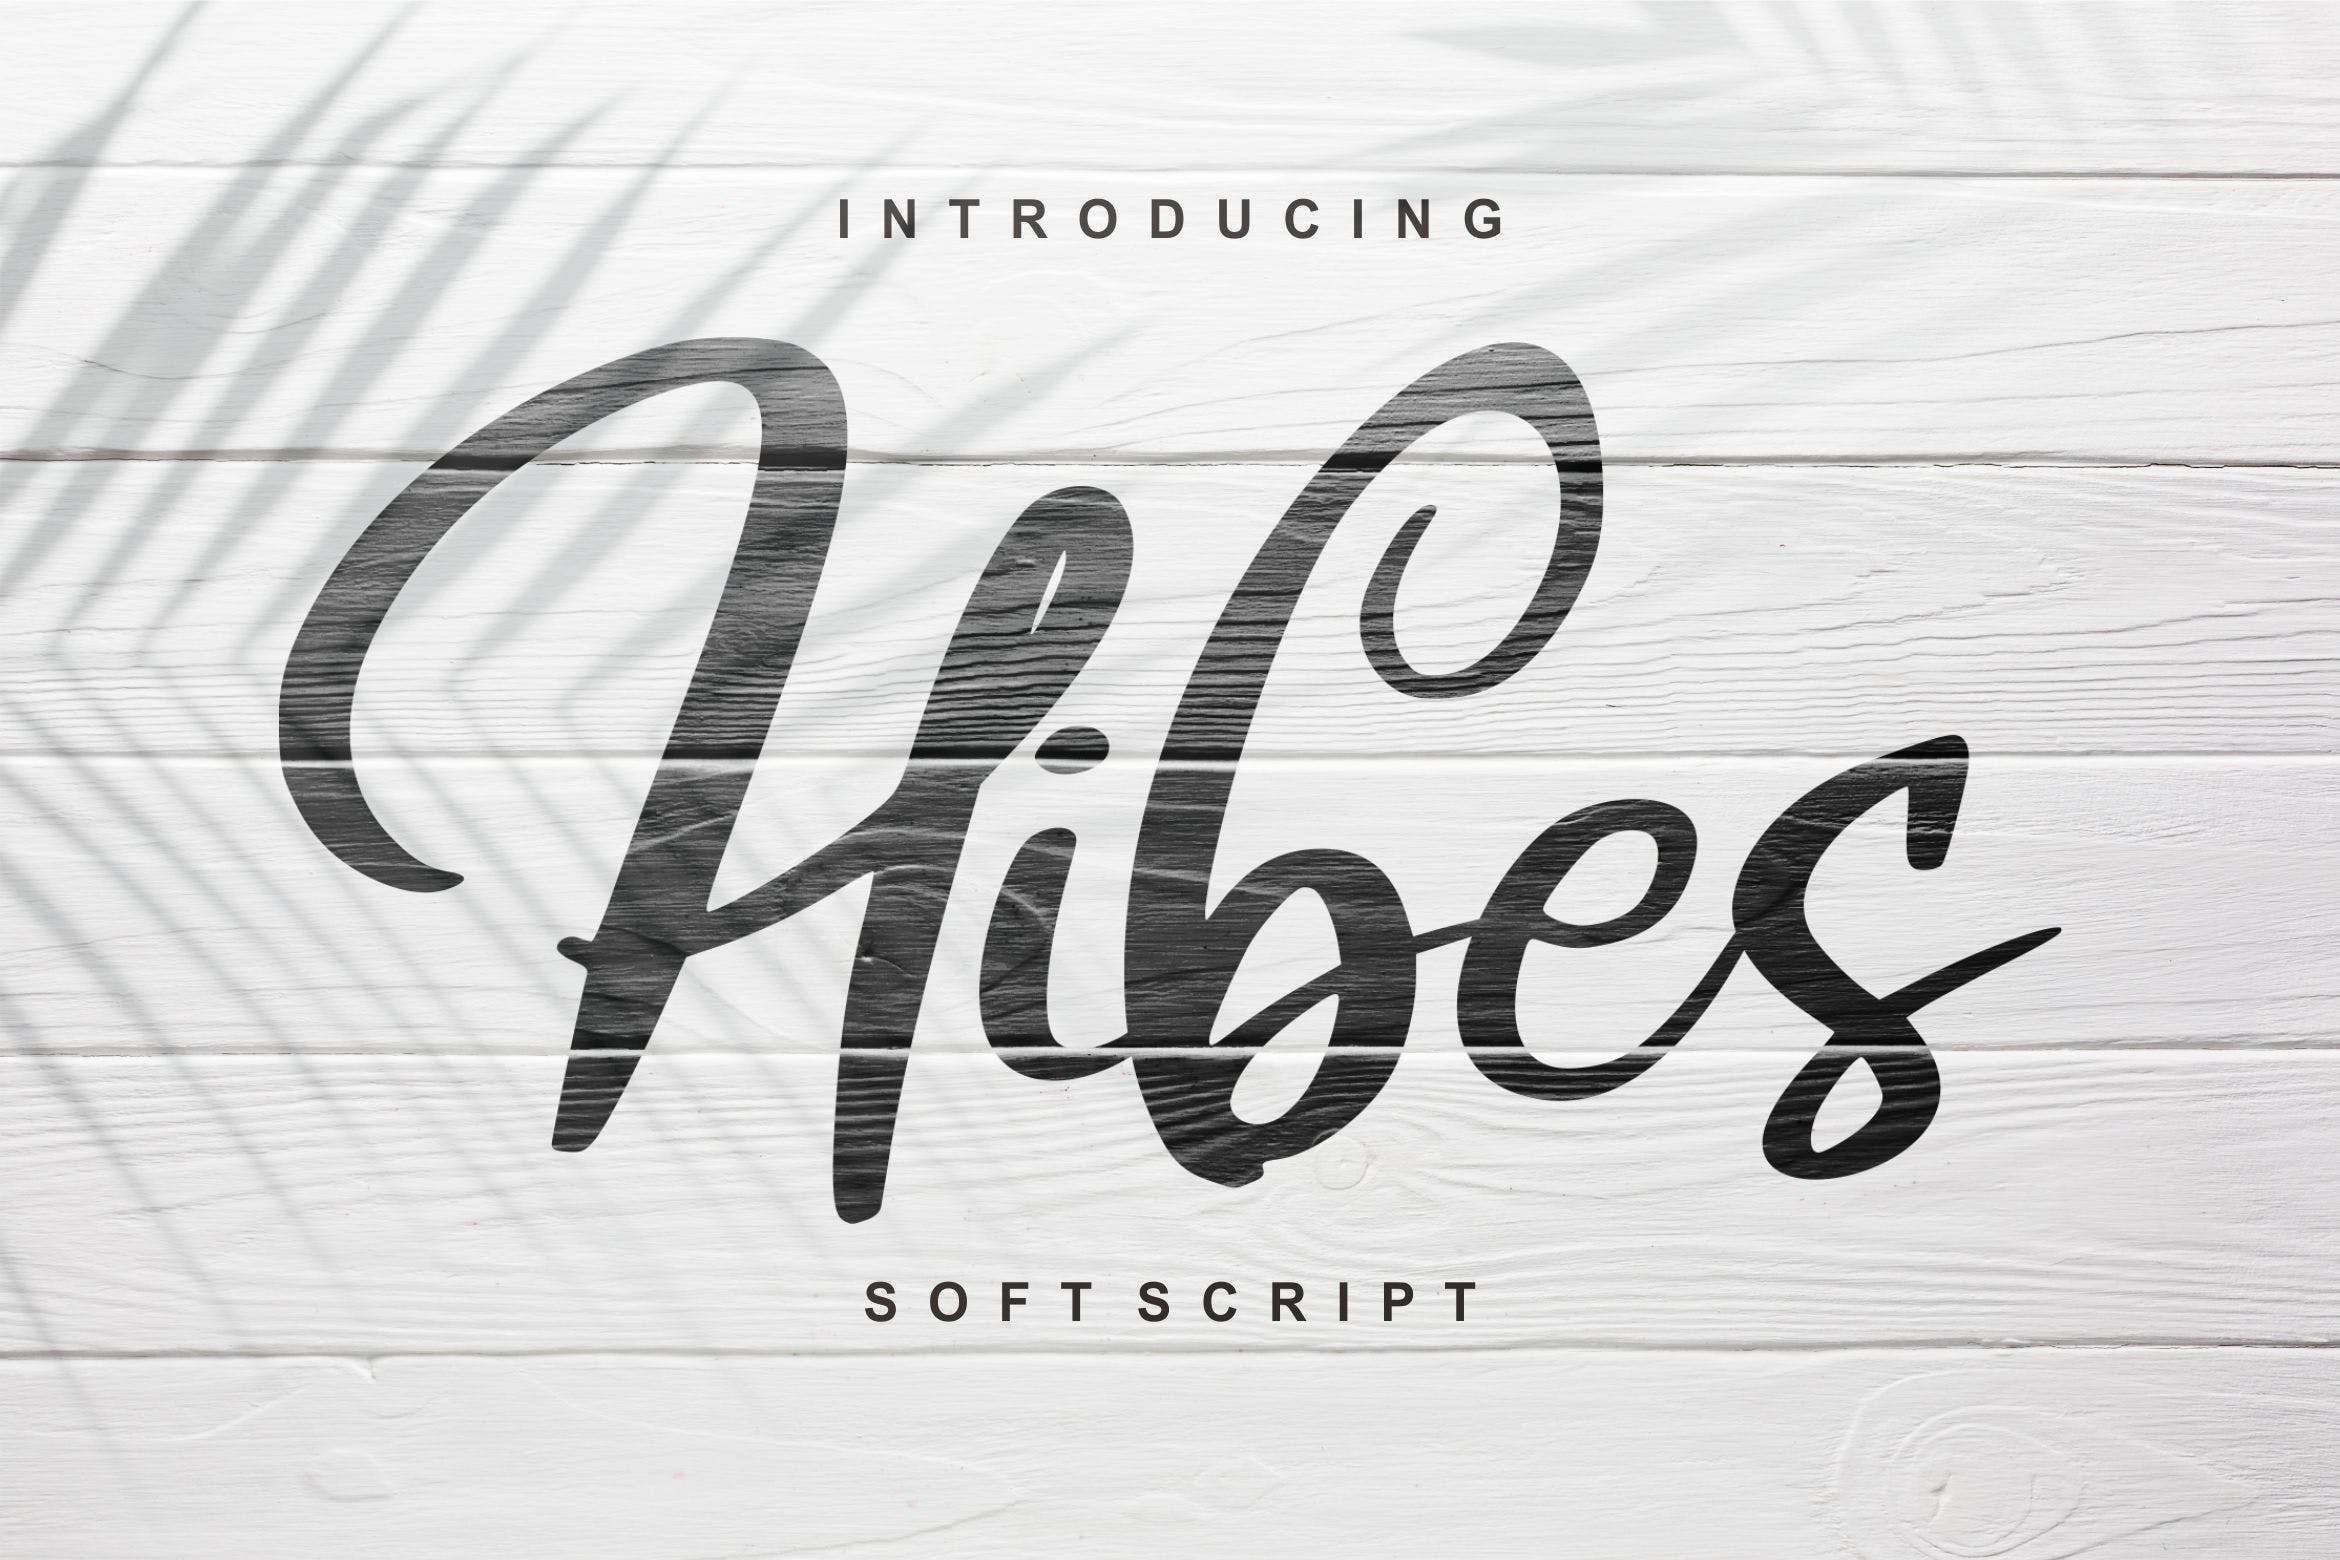 软笔刷书法风格英文手写字体16图库精选 Hibes | Soft Script Font插图